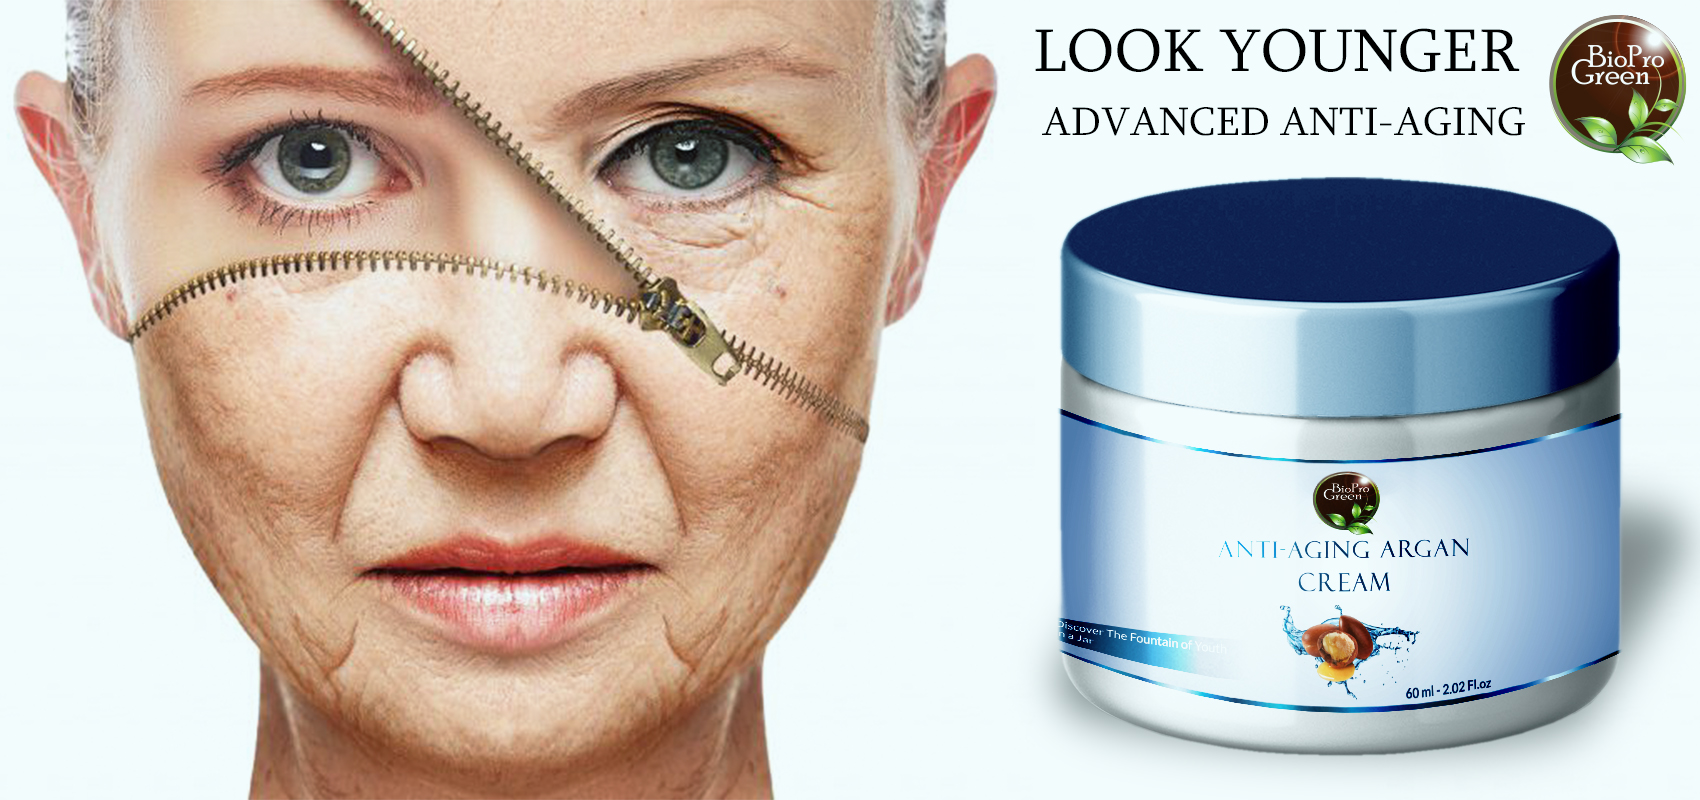 Argan anti-aging cream